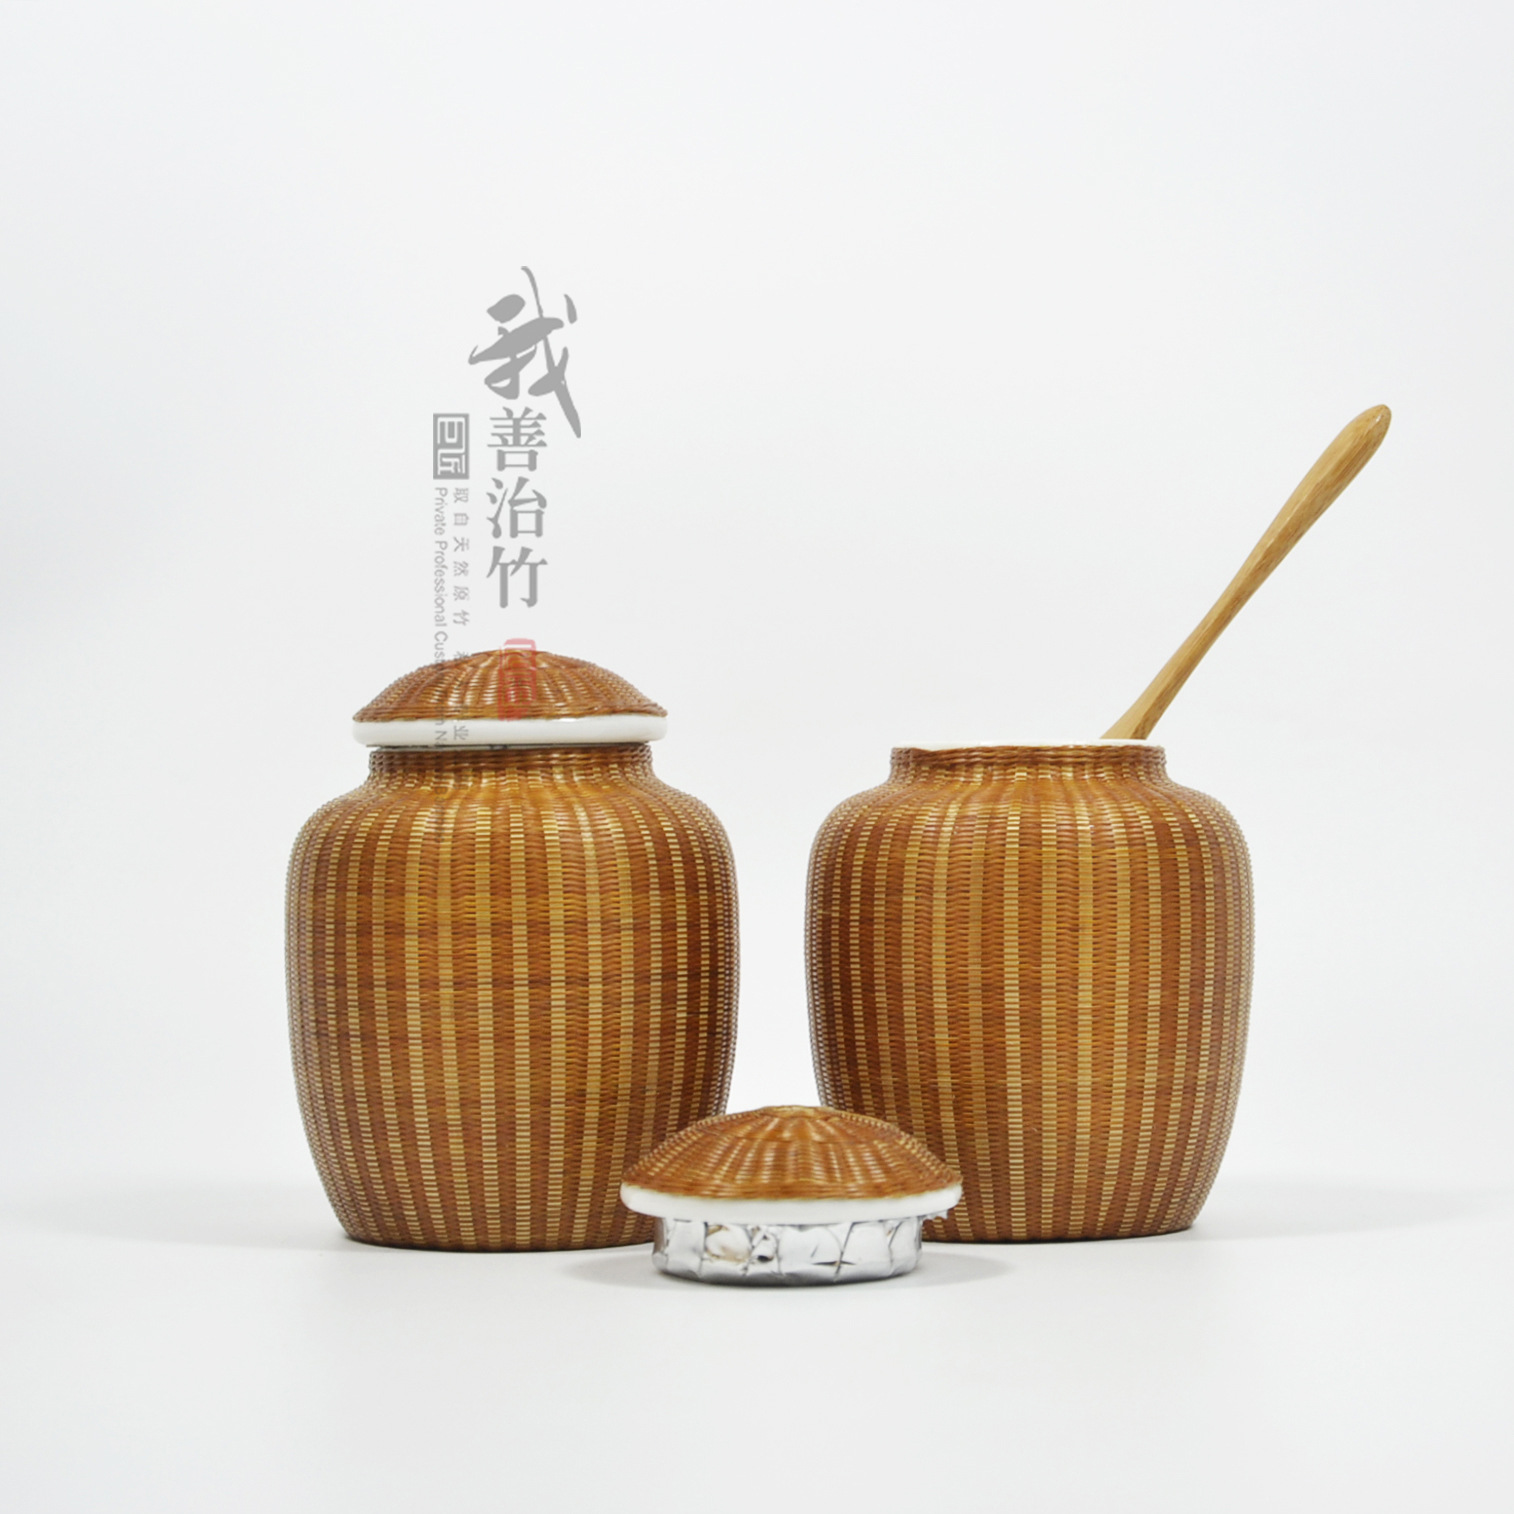 天然原竹丝瓷胎全手工扣瓷竹编密封罐礼品竹丝编茶叶罐-阿里巴巴